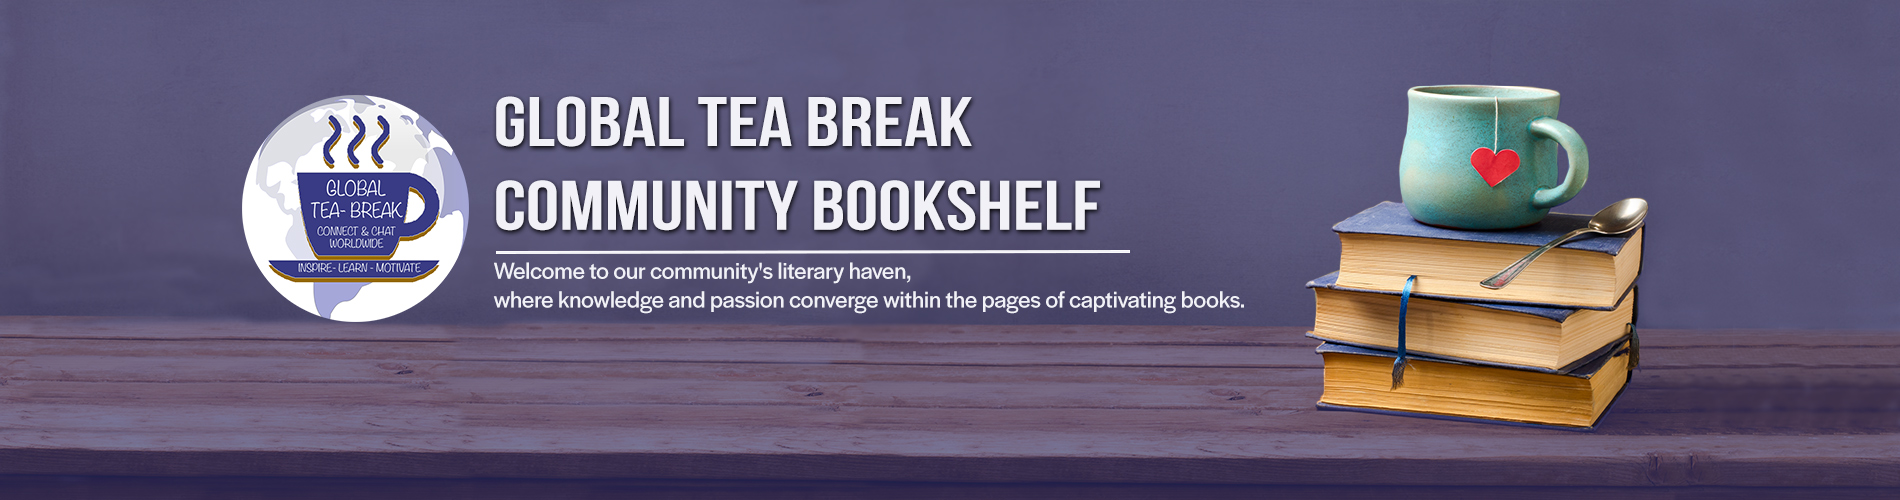 Global Tea Break Community Bookshelf